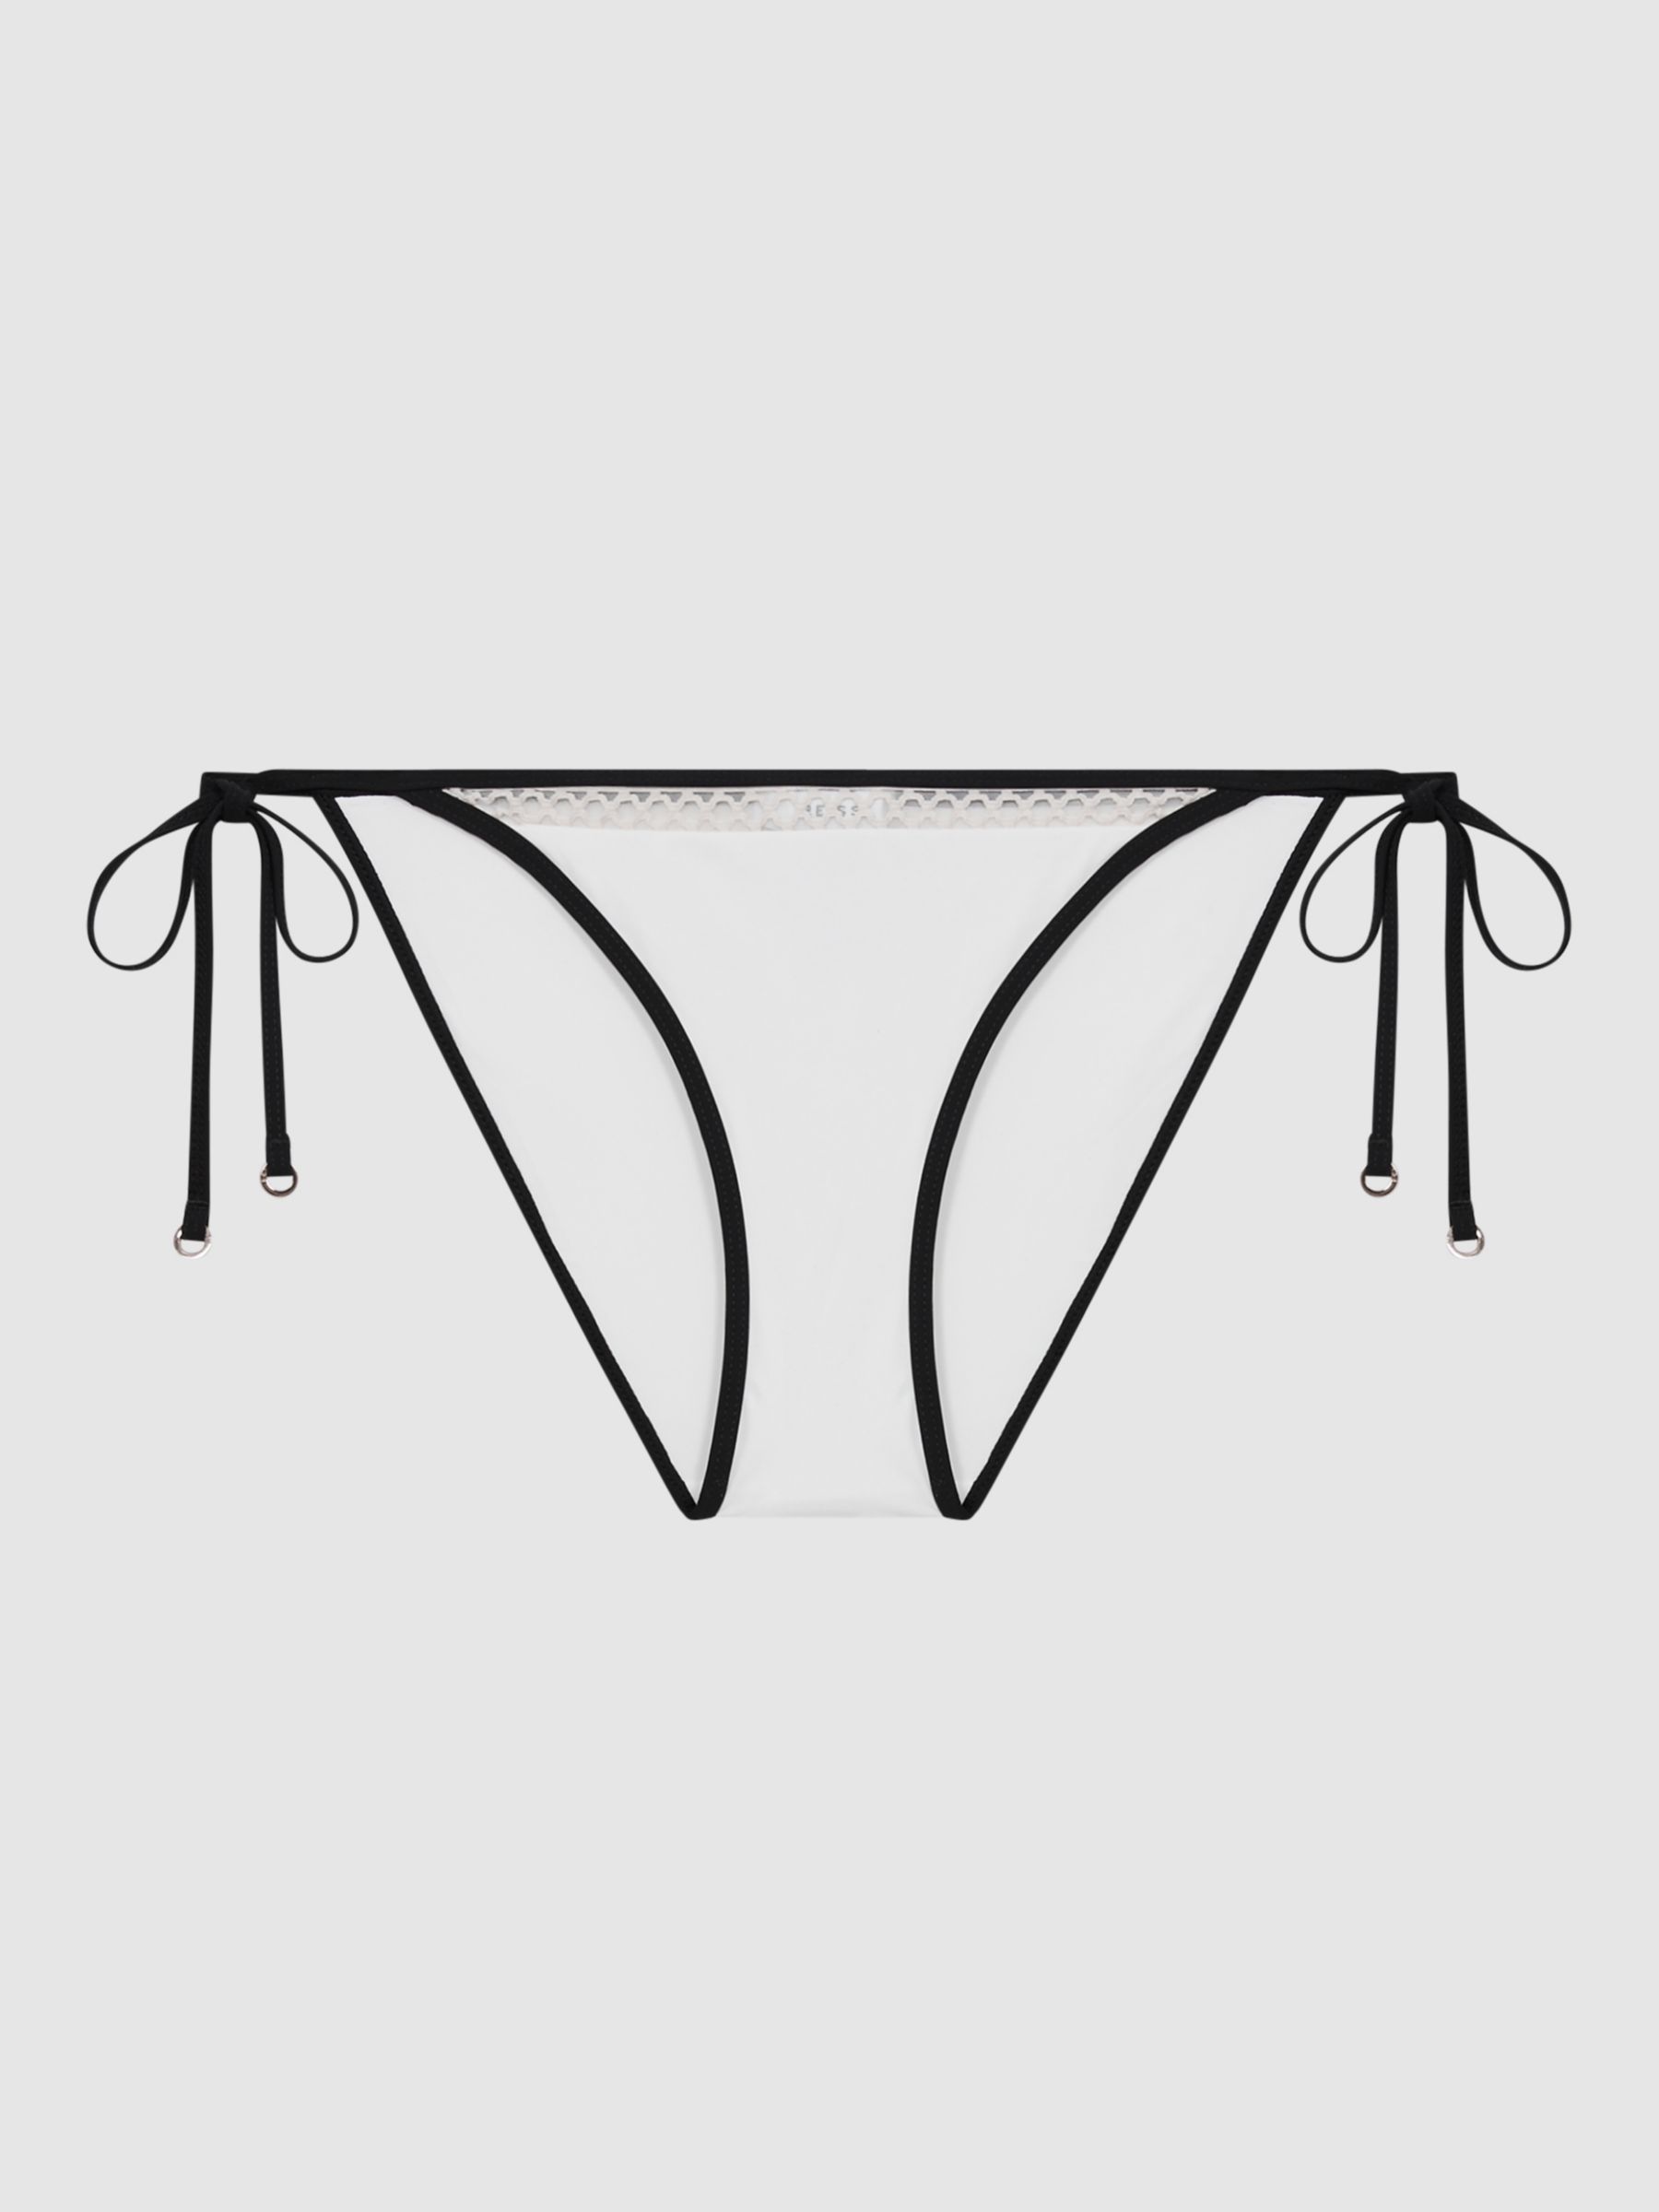 Reiss Sadie Stitch Detail Tie Bikini Bottoms, White/Black, 6